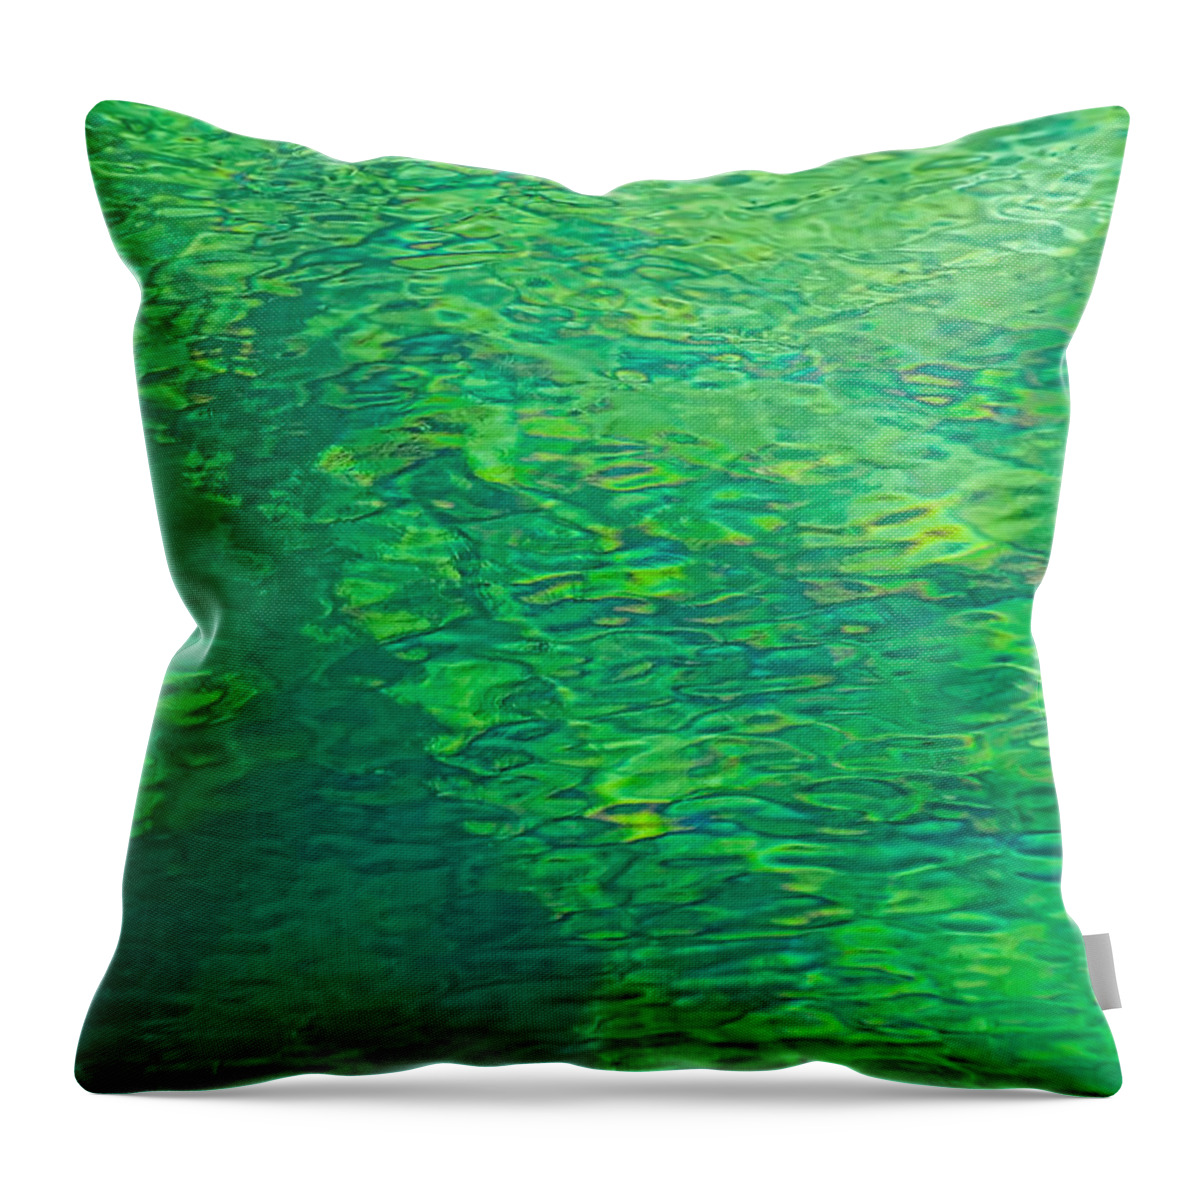 Green Throw Pillow featuring the photograph Water Green by Britt Runyon